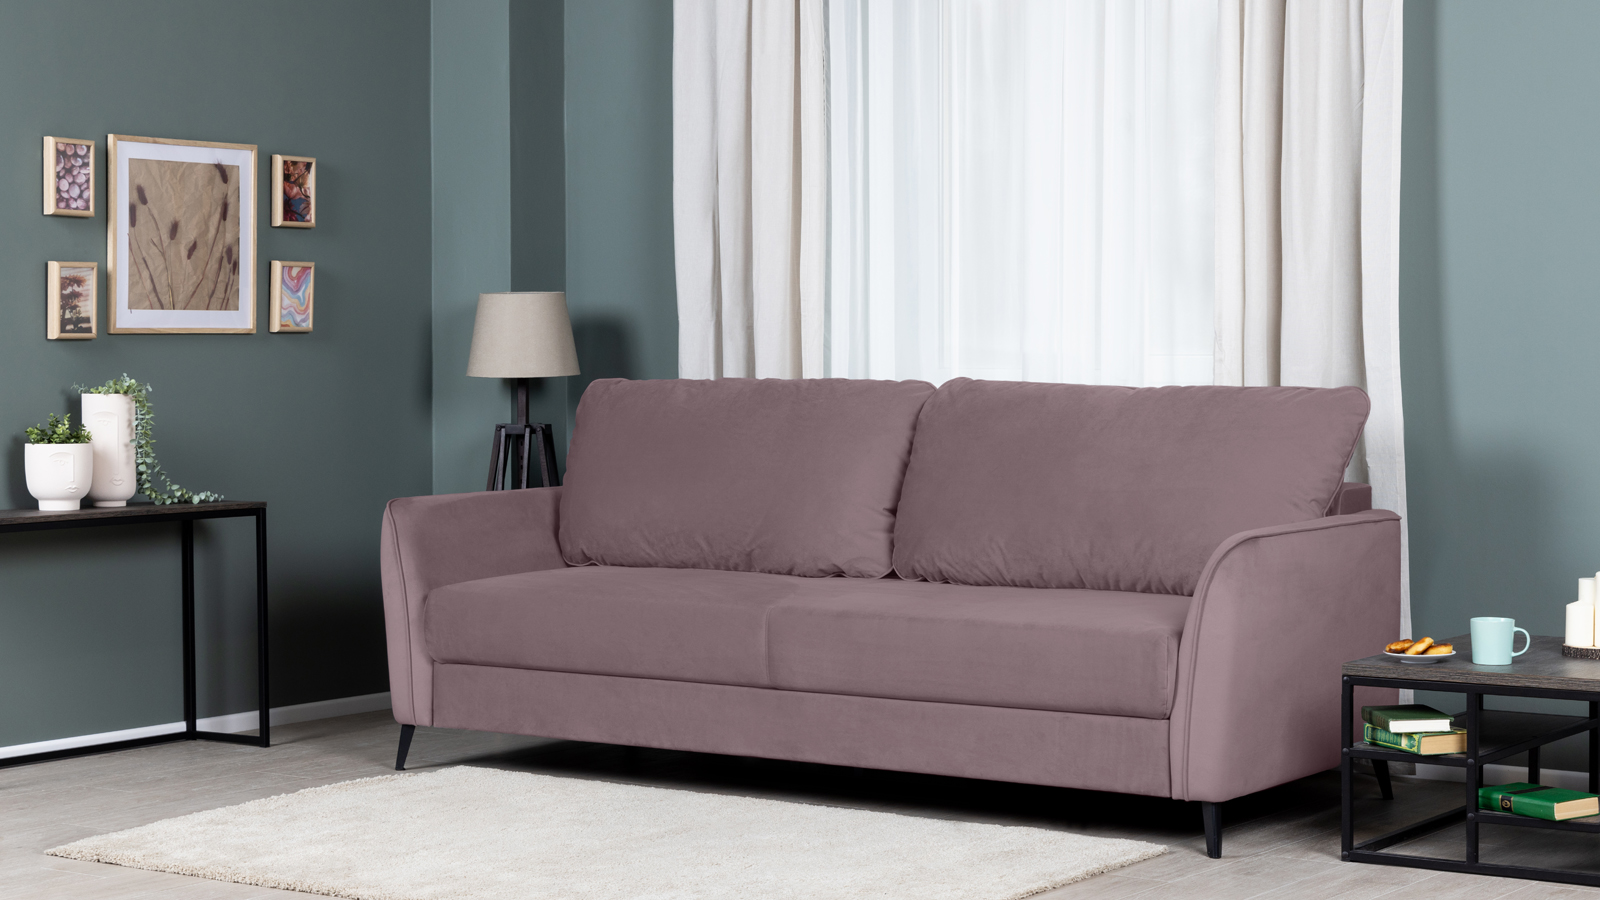 Компания Askona представила коллекцию диванов в скандинавском стиле (фото 2)